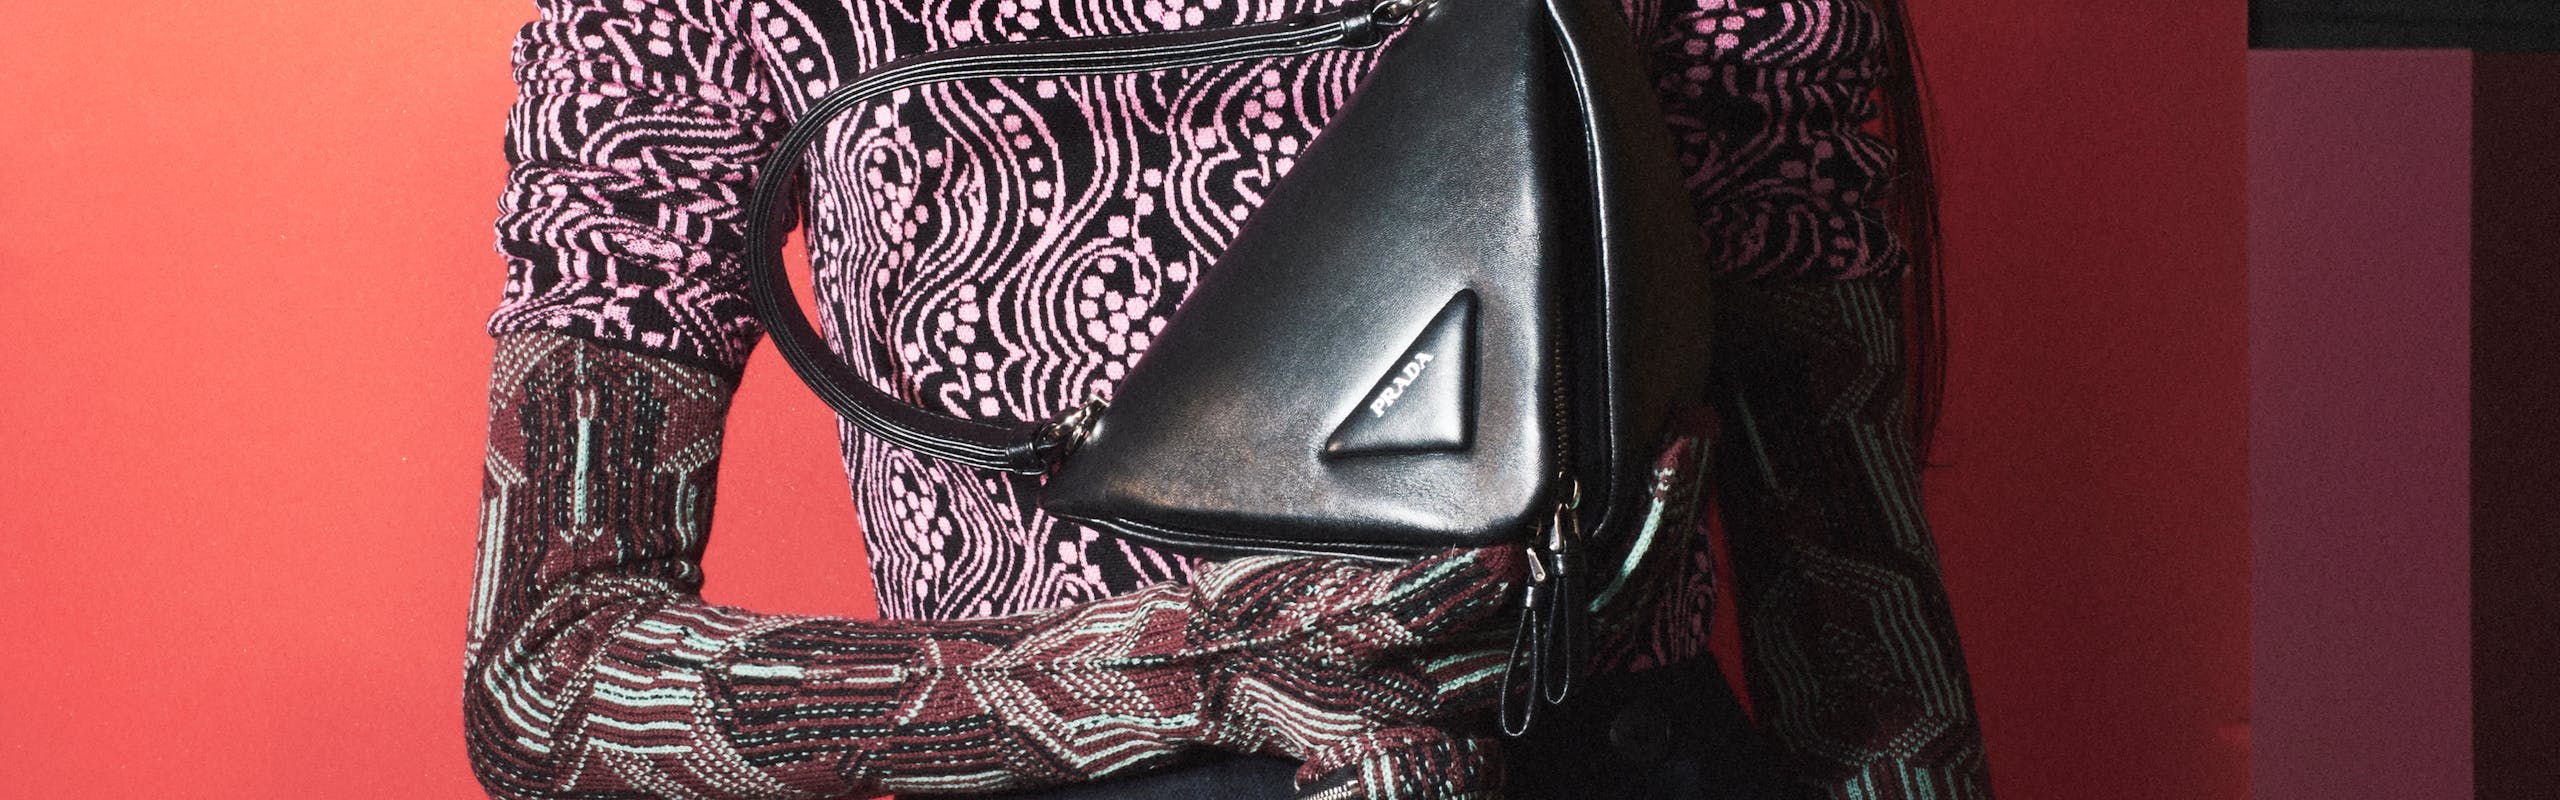 La borsa triangolo di Prada in uno scatto di David Sims